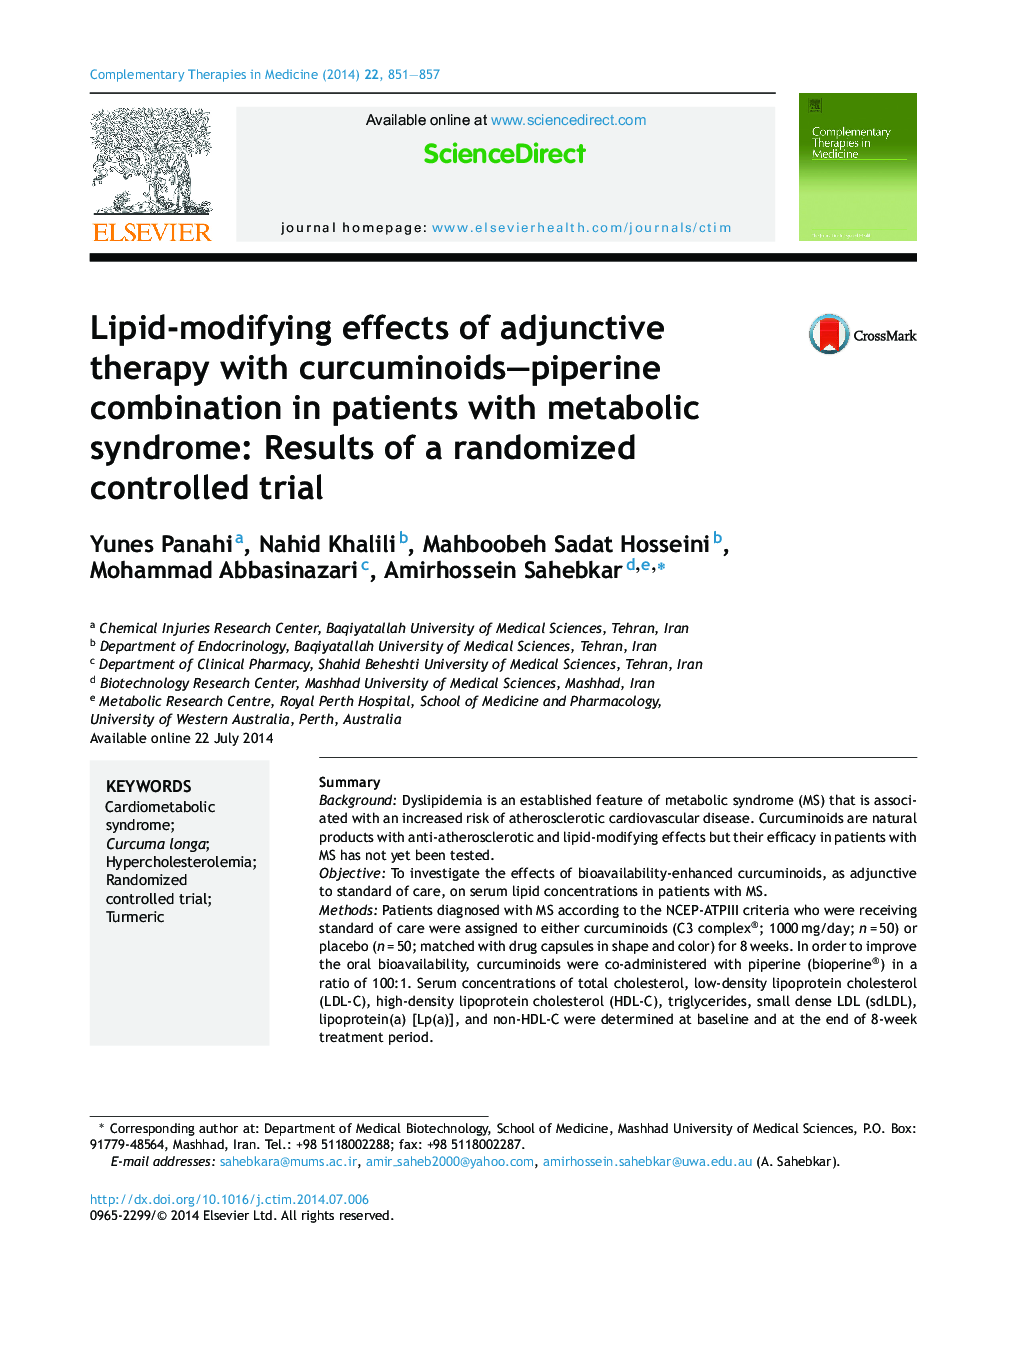 اثرات تغییرپذیری لیپید درمان دارویی با ترکیب کورکومینوید اکساآپپپیرین در بیماران مبتلا به سندرم متابولیک: نتایج یک کارآزمایی کنترل شده تصادفی 